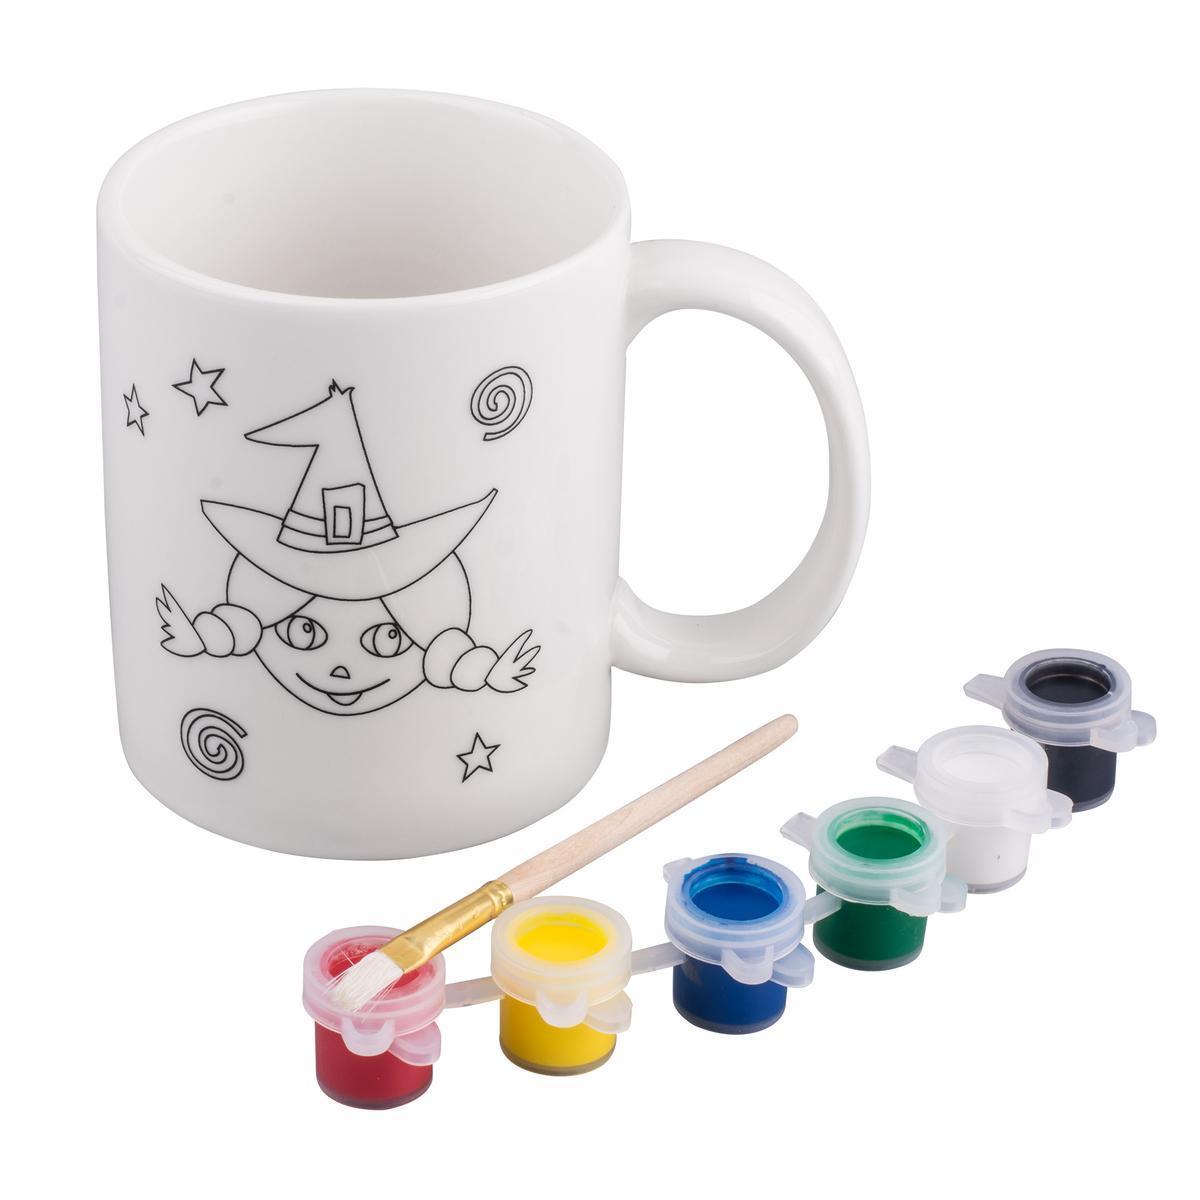 Kit mug à peindre et peinture - Céramique - 12 x 8 x H 9,6 cm - Multicolore